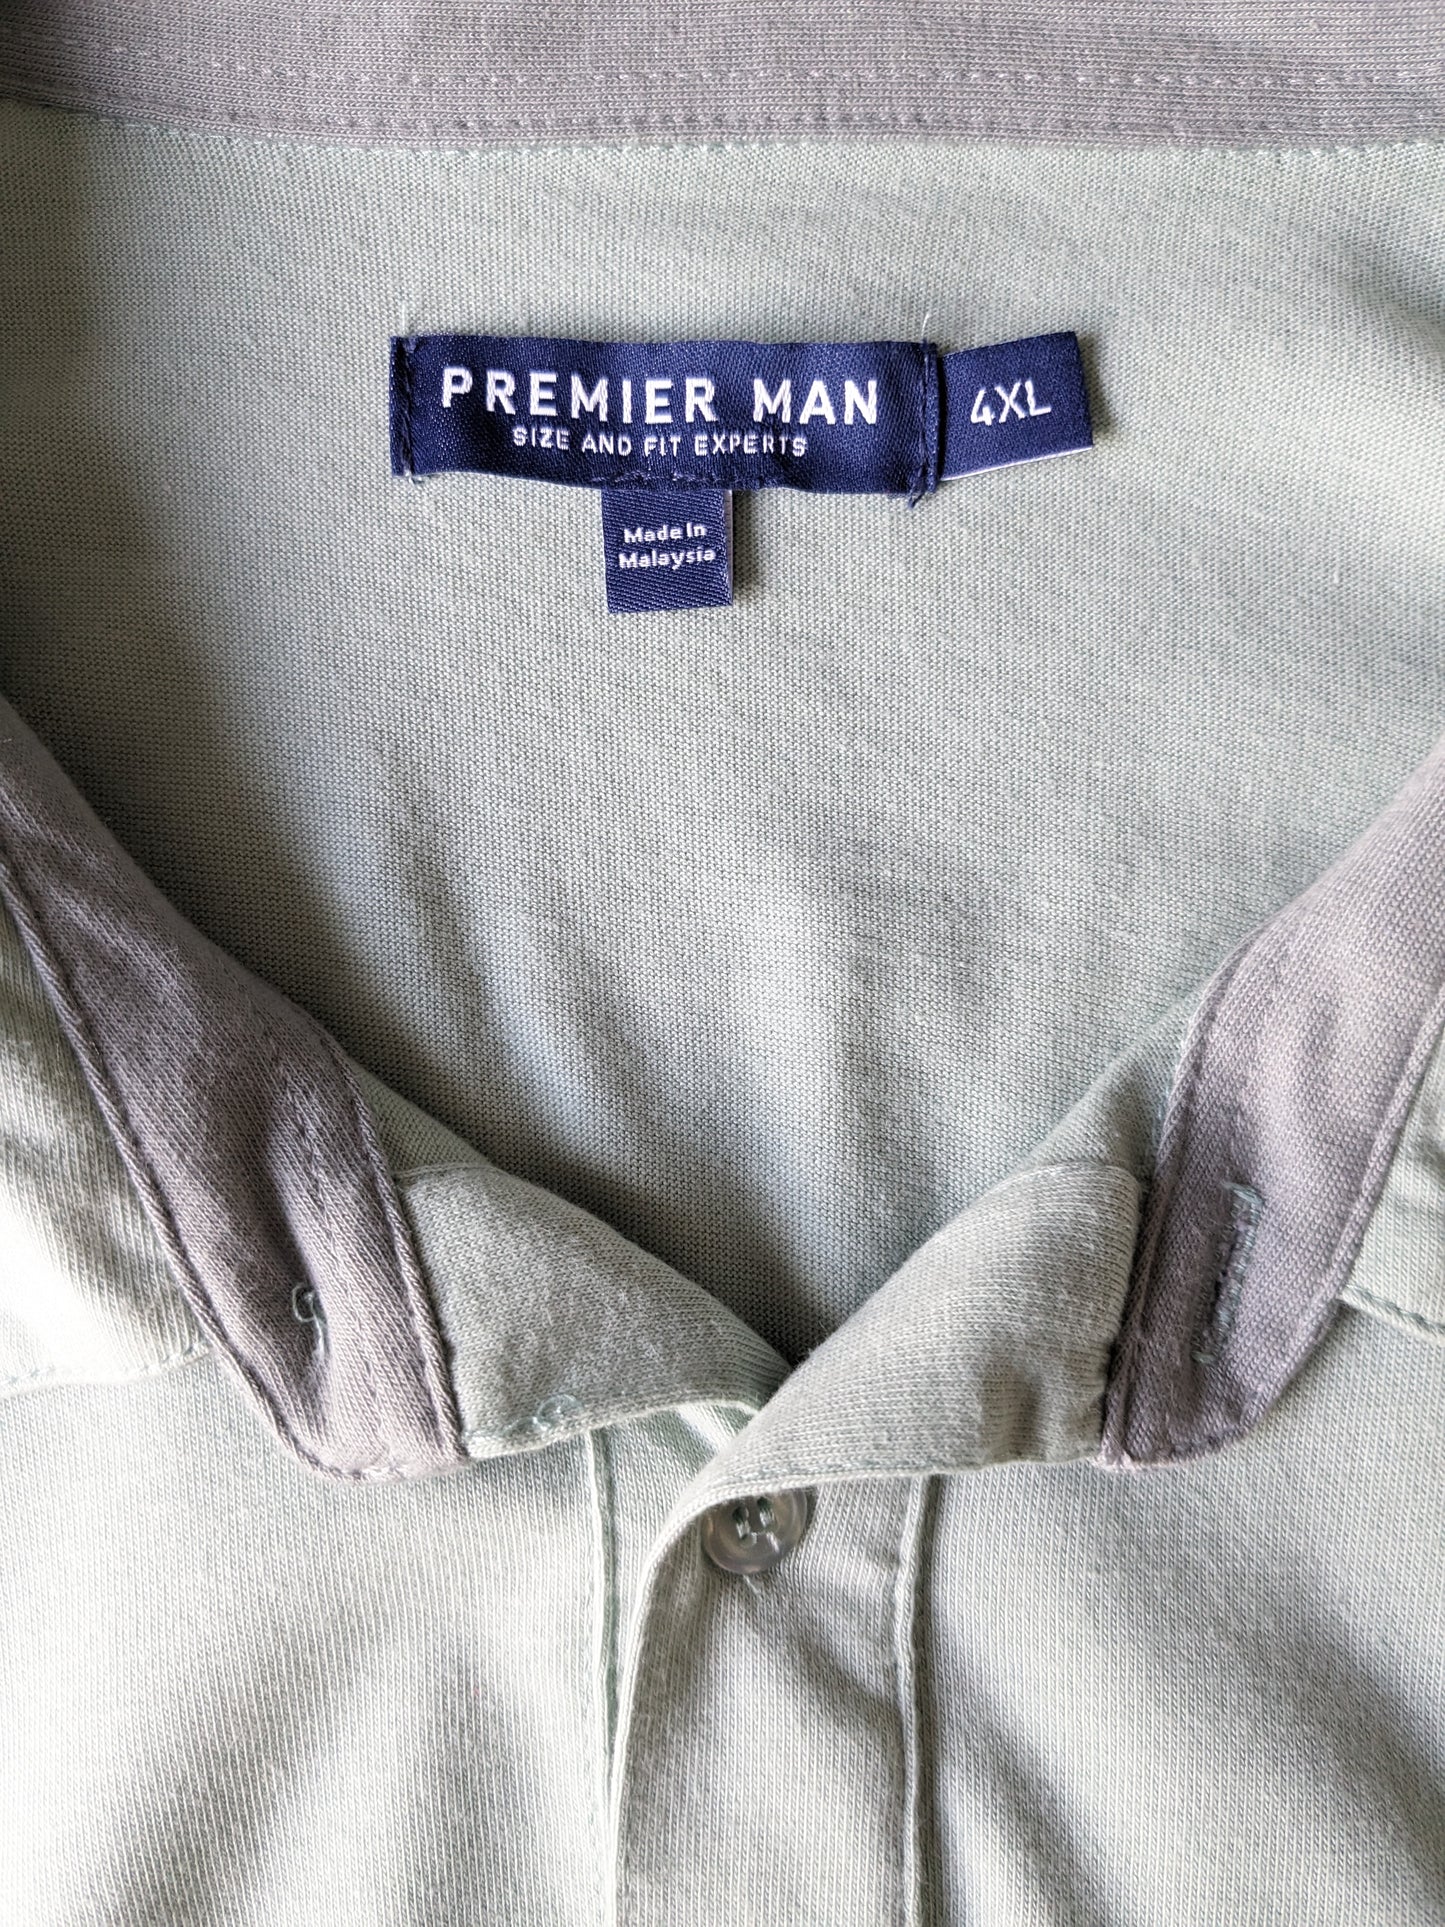 Premier Man Polo vintage. Vert coloré. Taille 4xl / xxxxl.